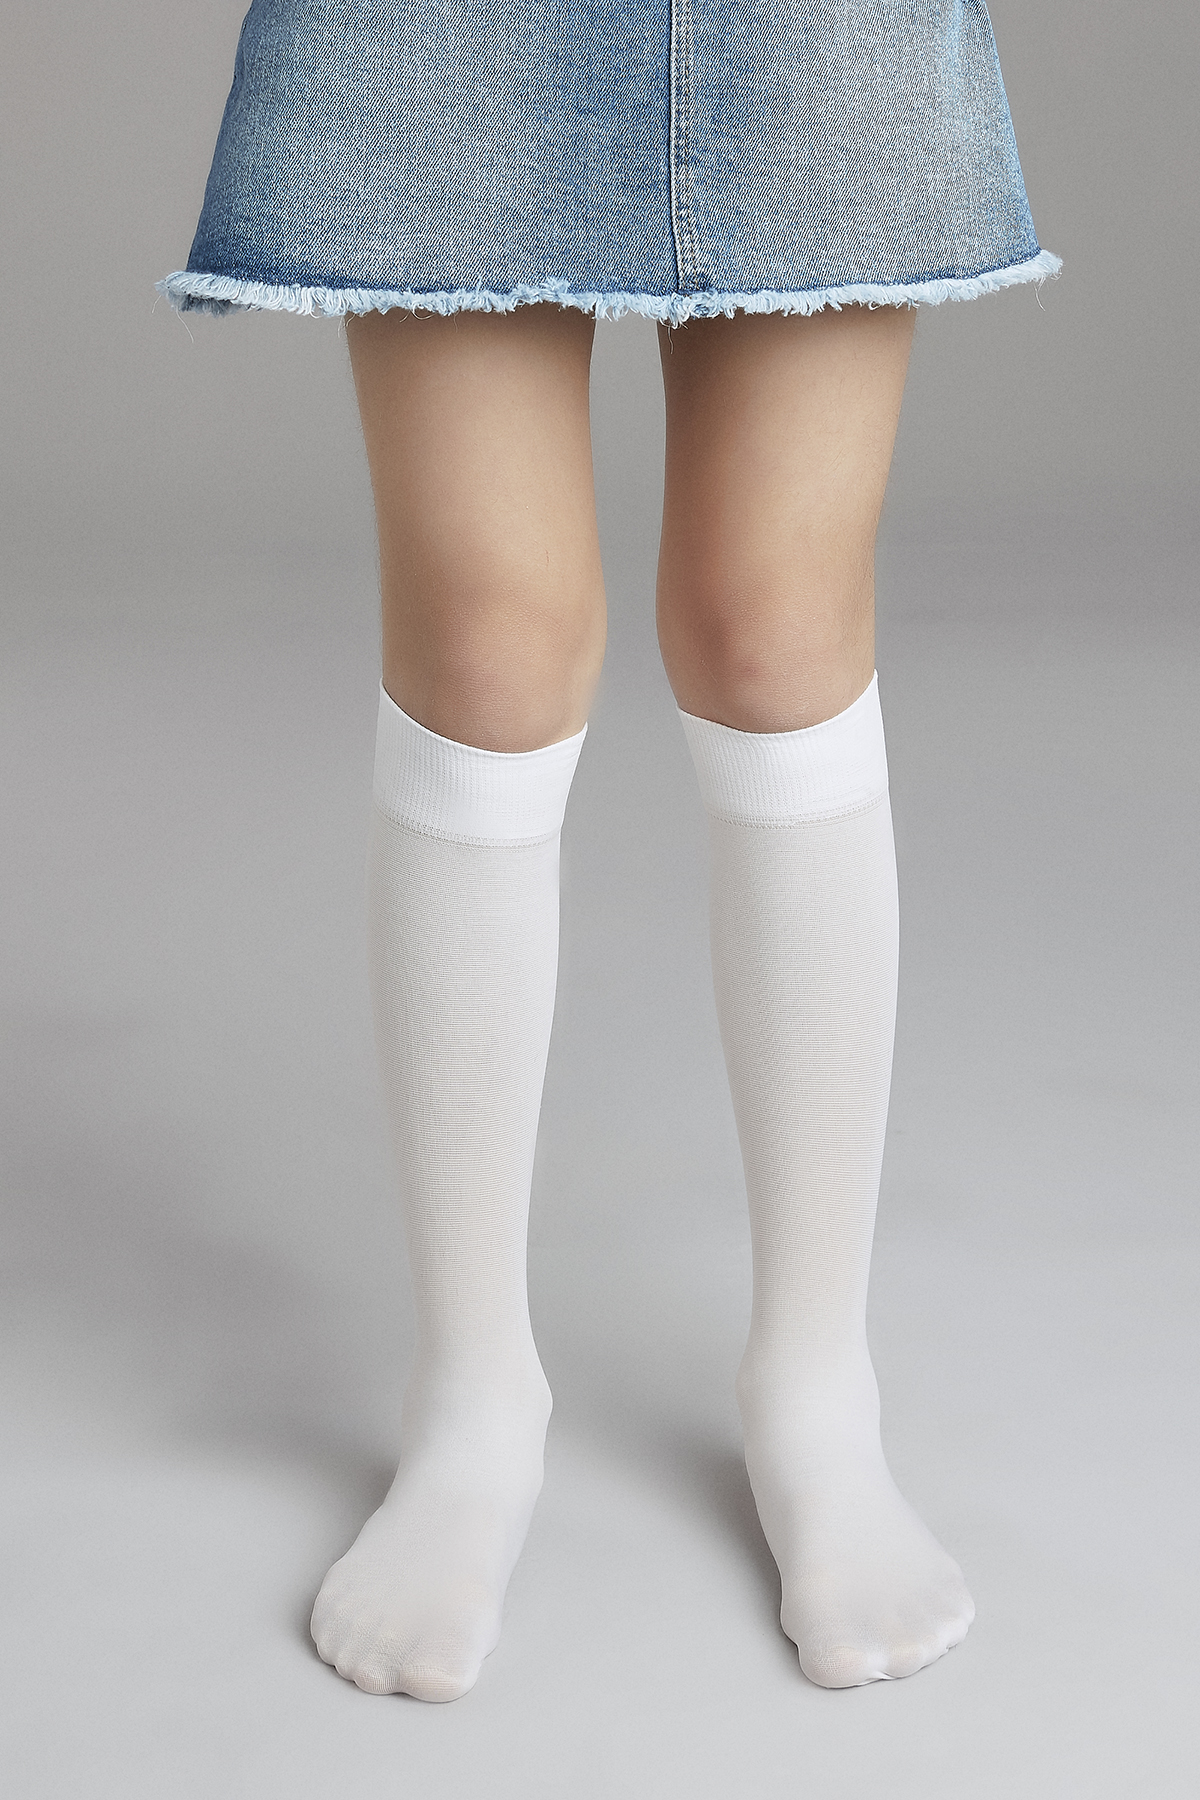 Penti Beyaz Kız Çocuklu Mikro 40 Pantolon Çorabı. 1